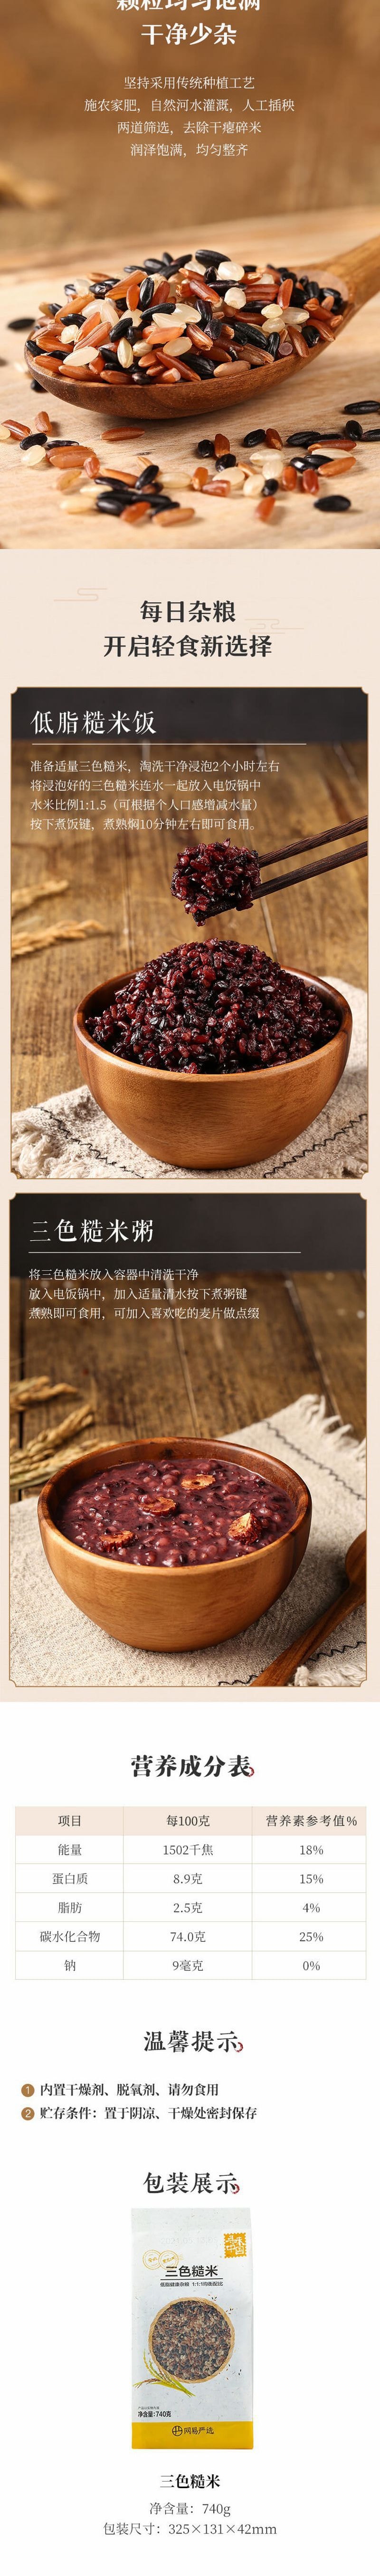 【中国直邮】网易严选 低脂高纤 健康轻食 三色糙米 740克